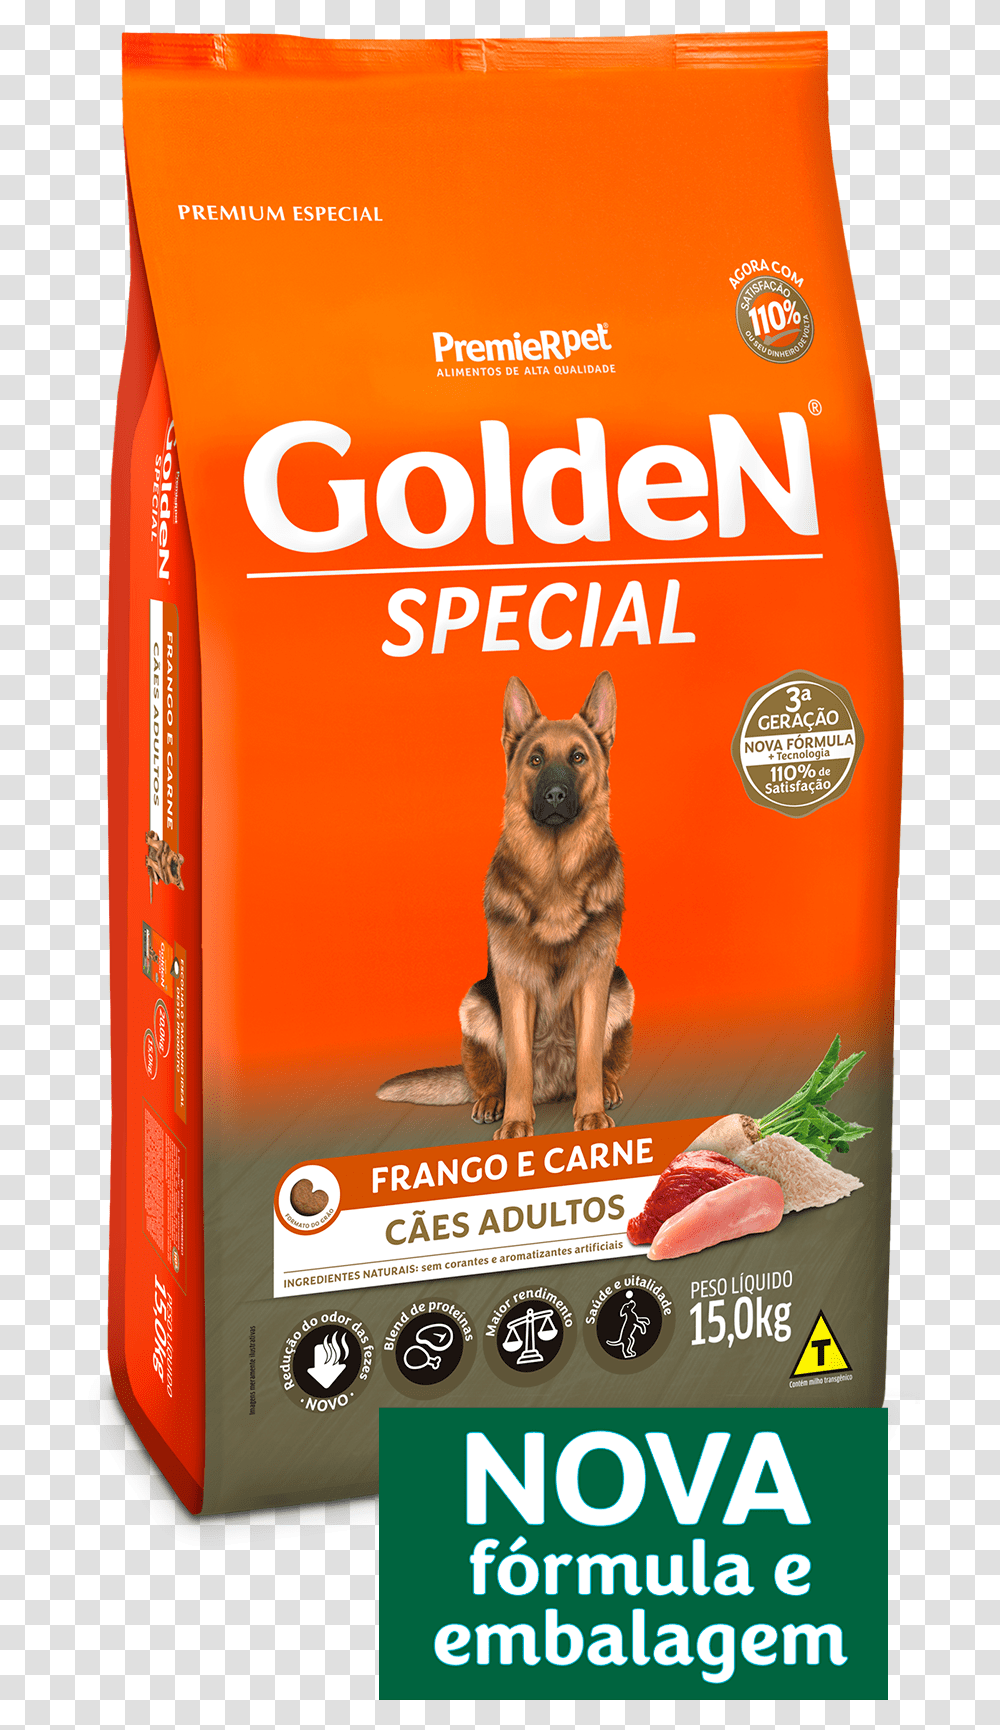 Golden Frango E Carne, Dog, Pet, Canine, Animal Transparent Png